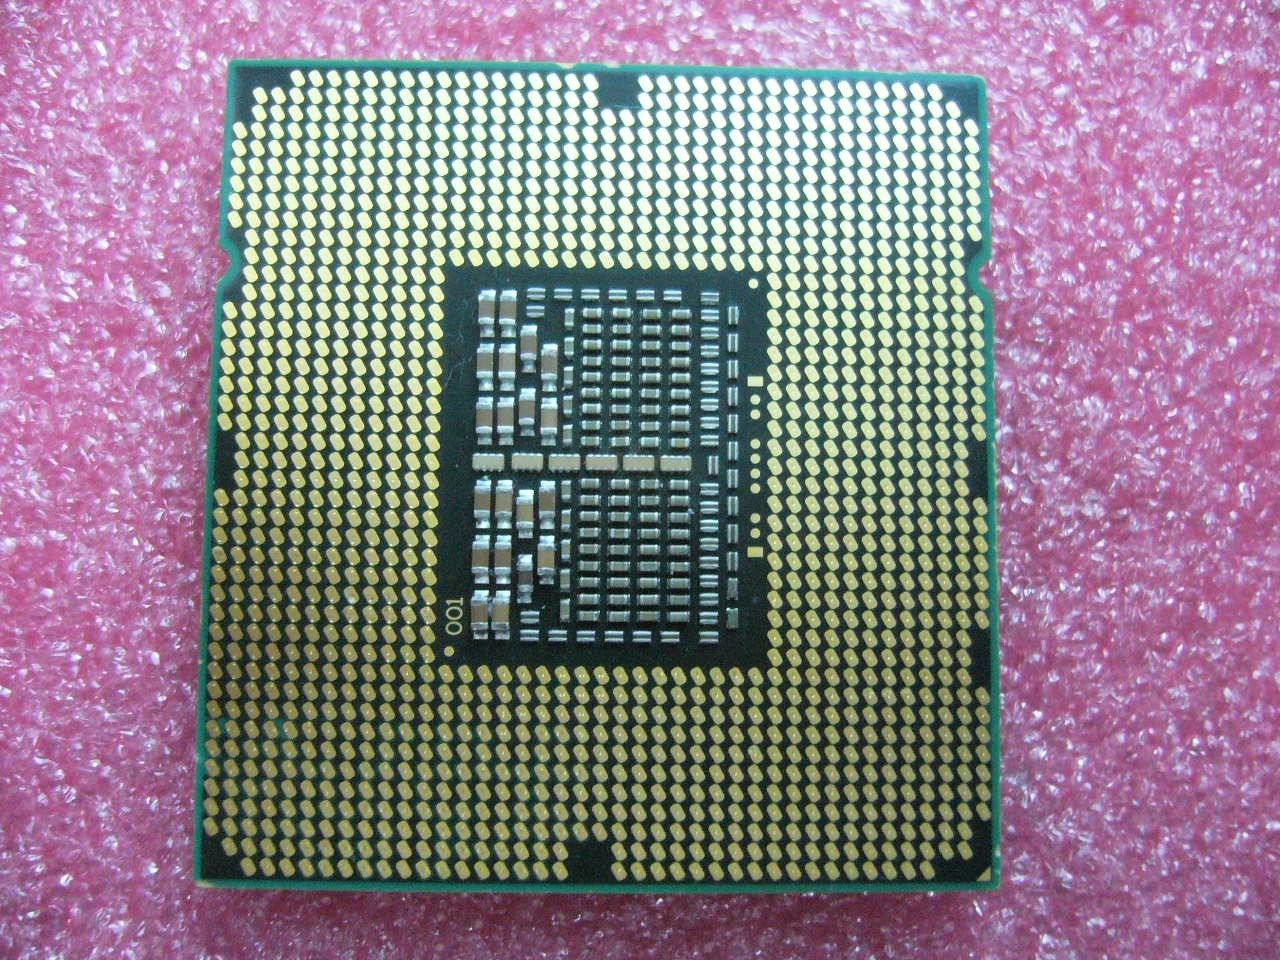 INTEL Dual-Cores CPU W3505 2.53GHZ/4MB Cache 4.8GT/s QPI LGA1366 SLBGC - Click Image to Close